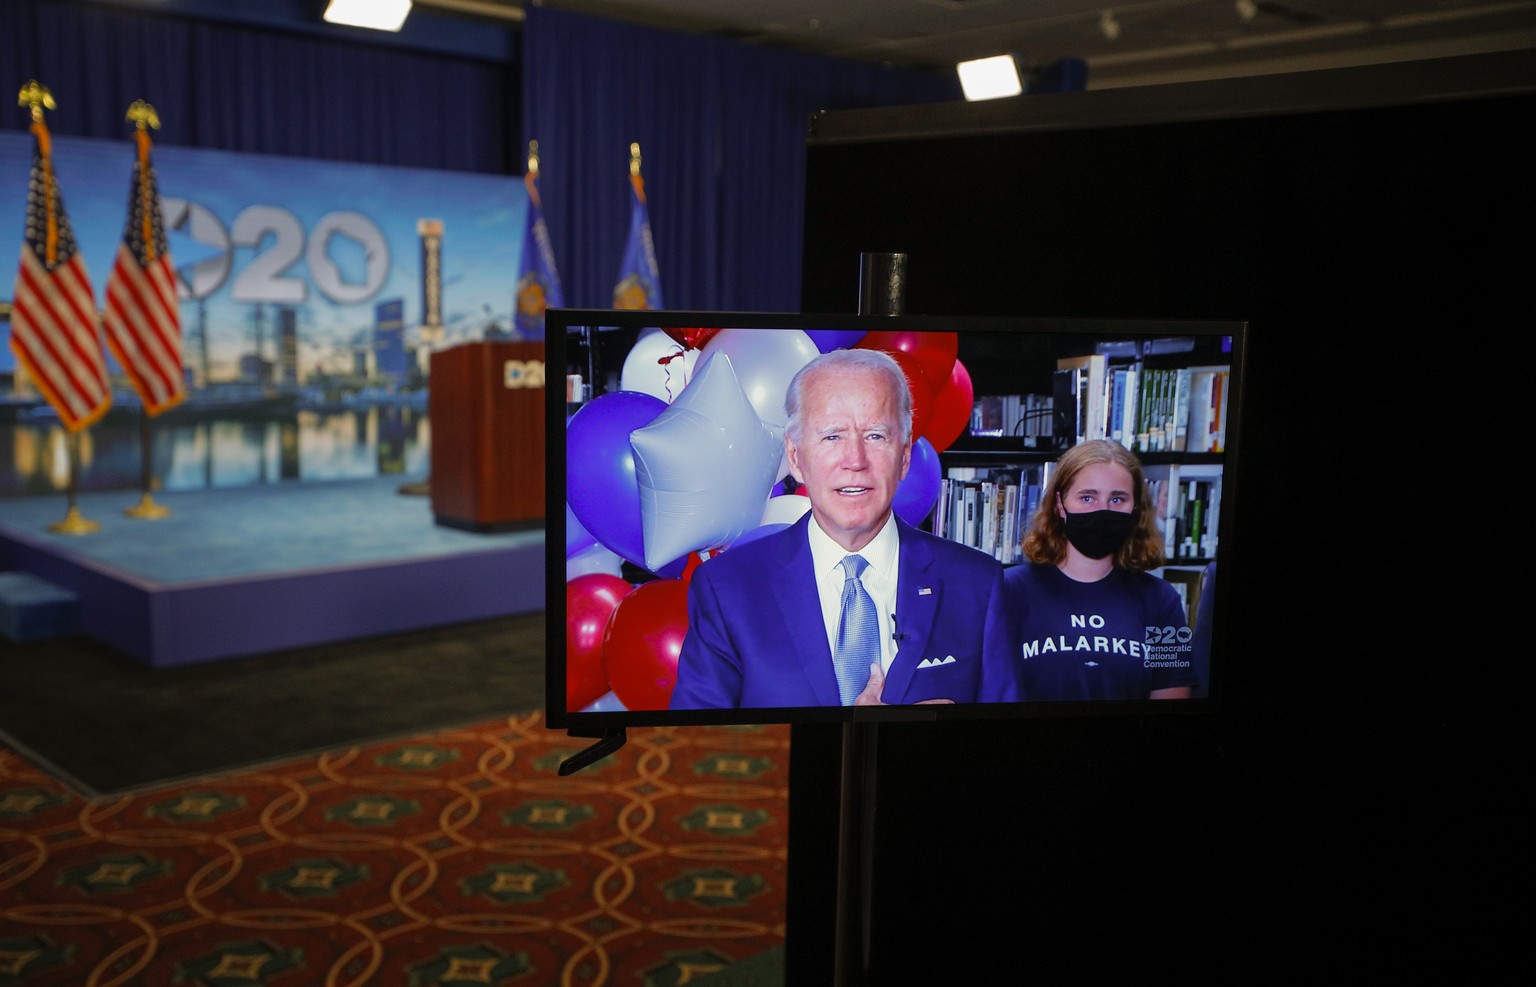 Wählen in Zeiten des Coronavirus: Joe Biden wird per Videobotschaft zur Democratic National Convention zugeschaltet.